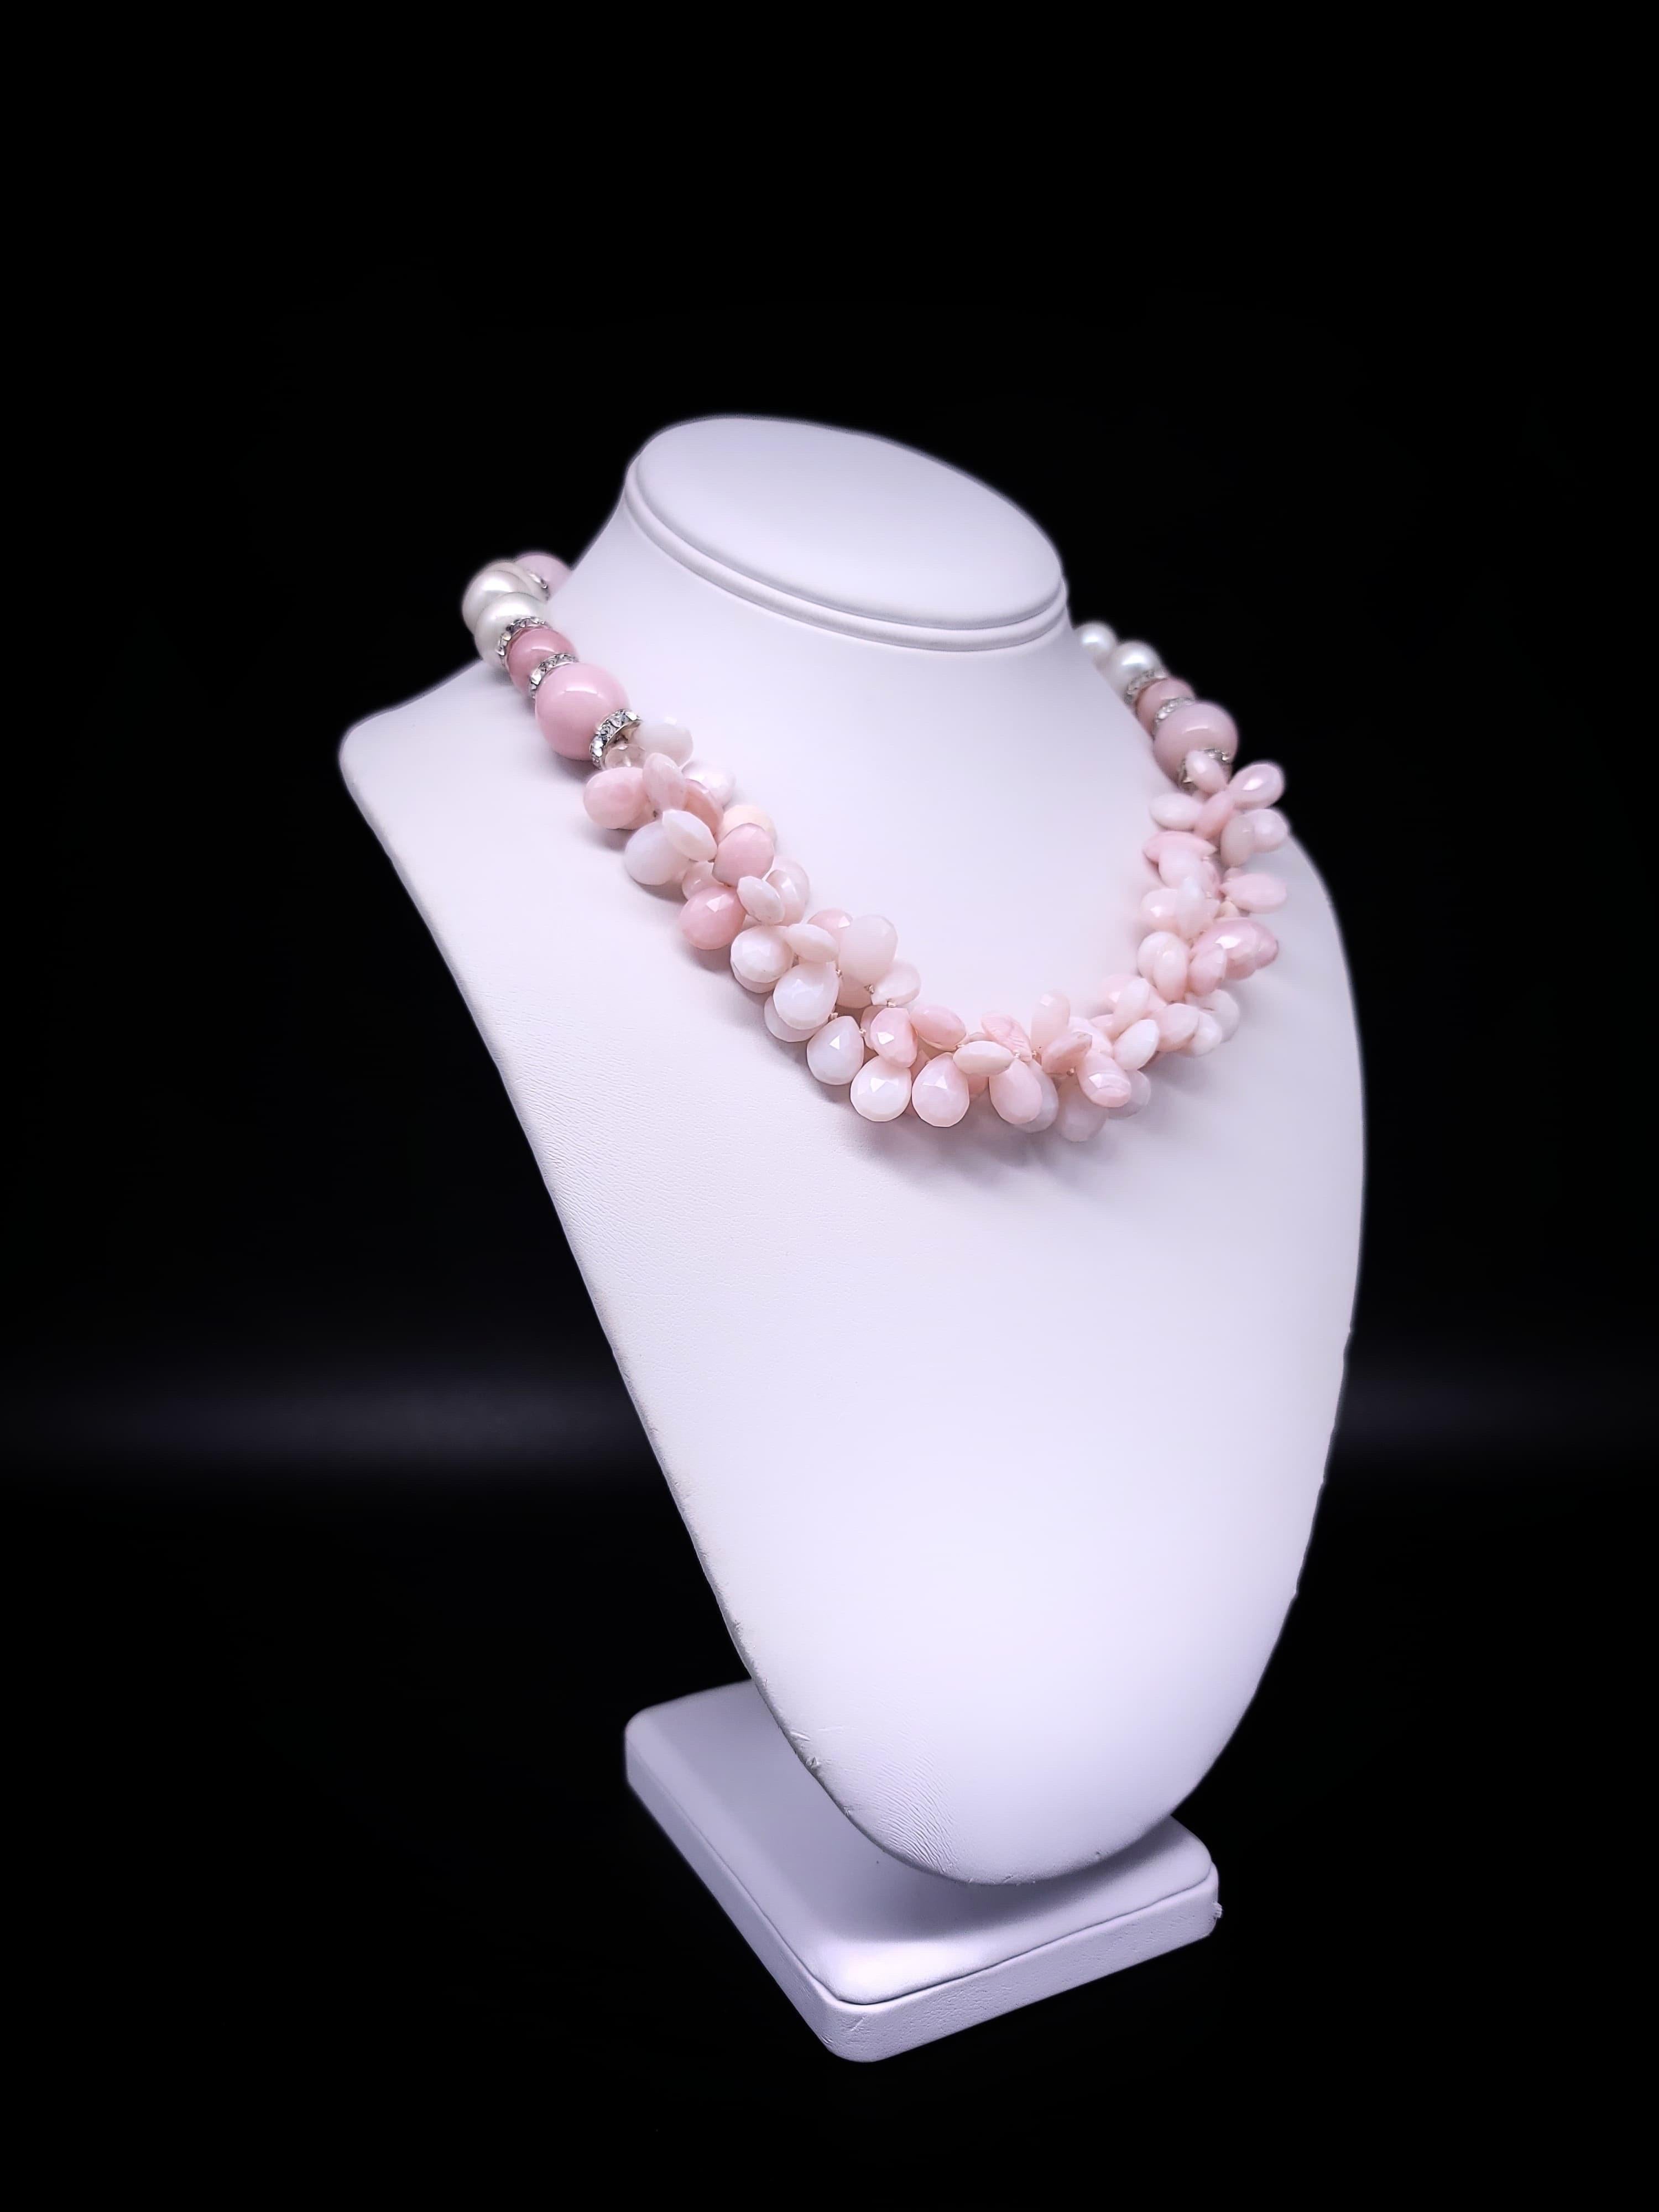 
Einzigartige Eleganz:

Erhöhen Sie Ihren Stil mit der Pink Opal Softly Ruffled Bib Necklace - ein wirklich einzigartiges Stück. Dieses zarte und feminine Collier besteht aus kaskadenartig angeordneten, facettierten Opal-Tränen in einem lieblichen